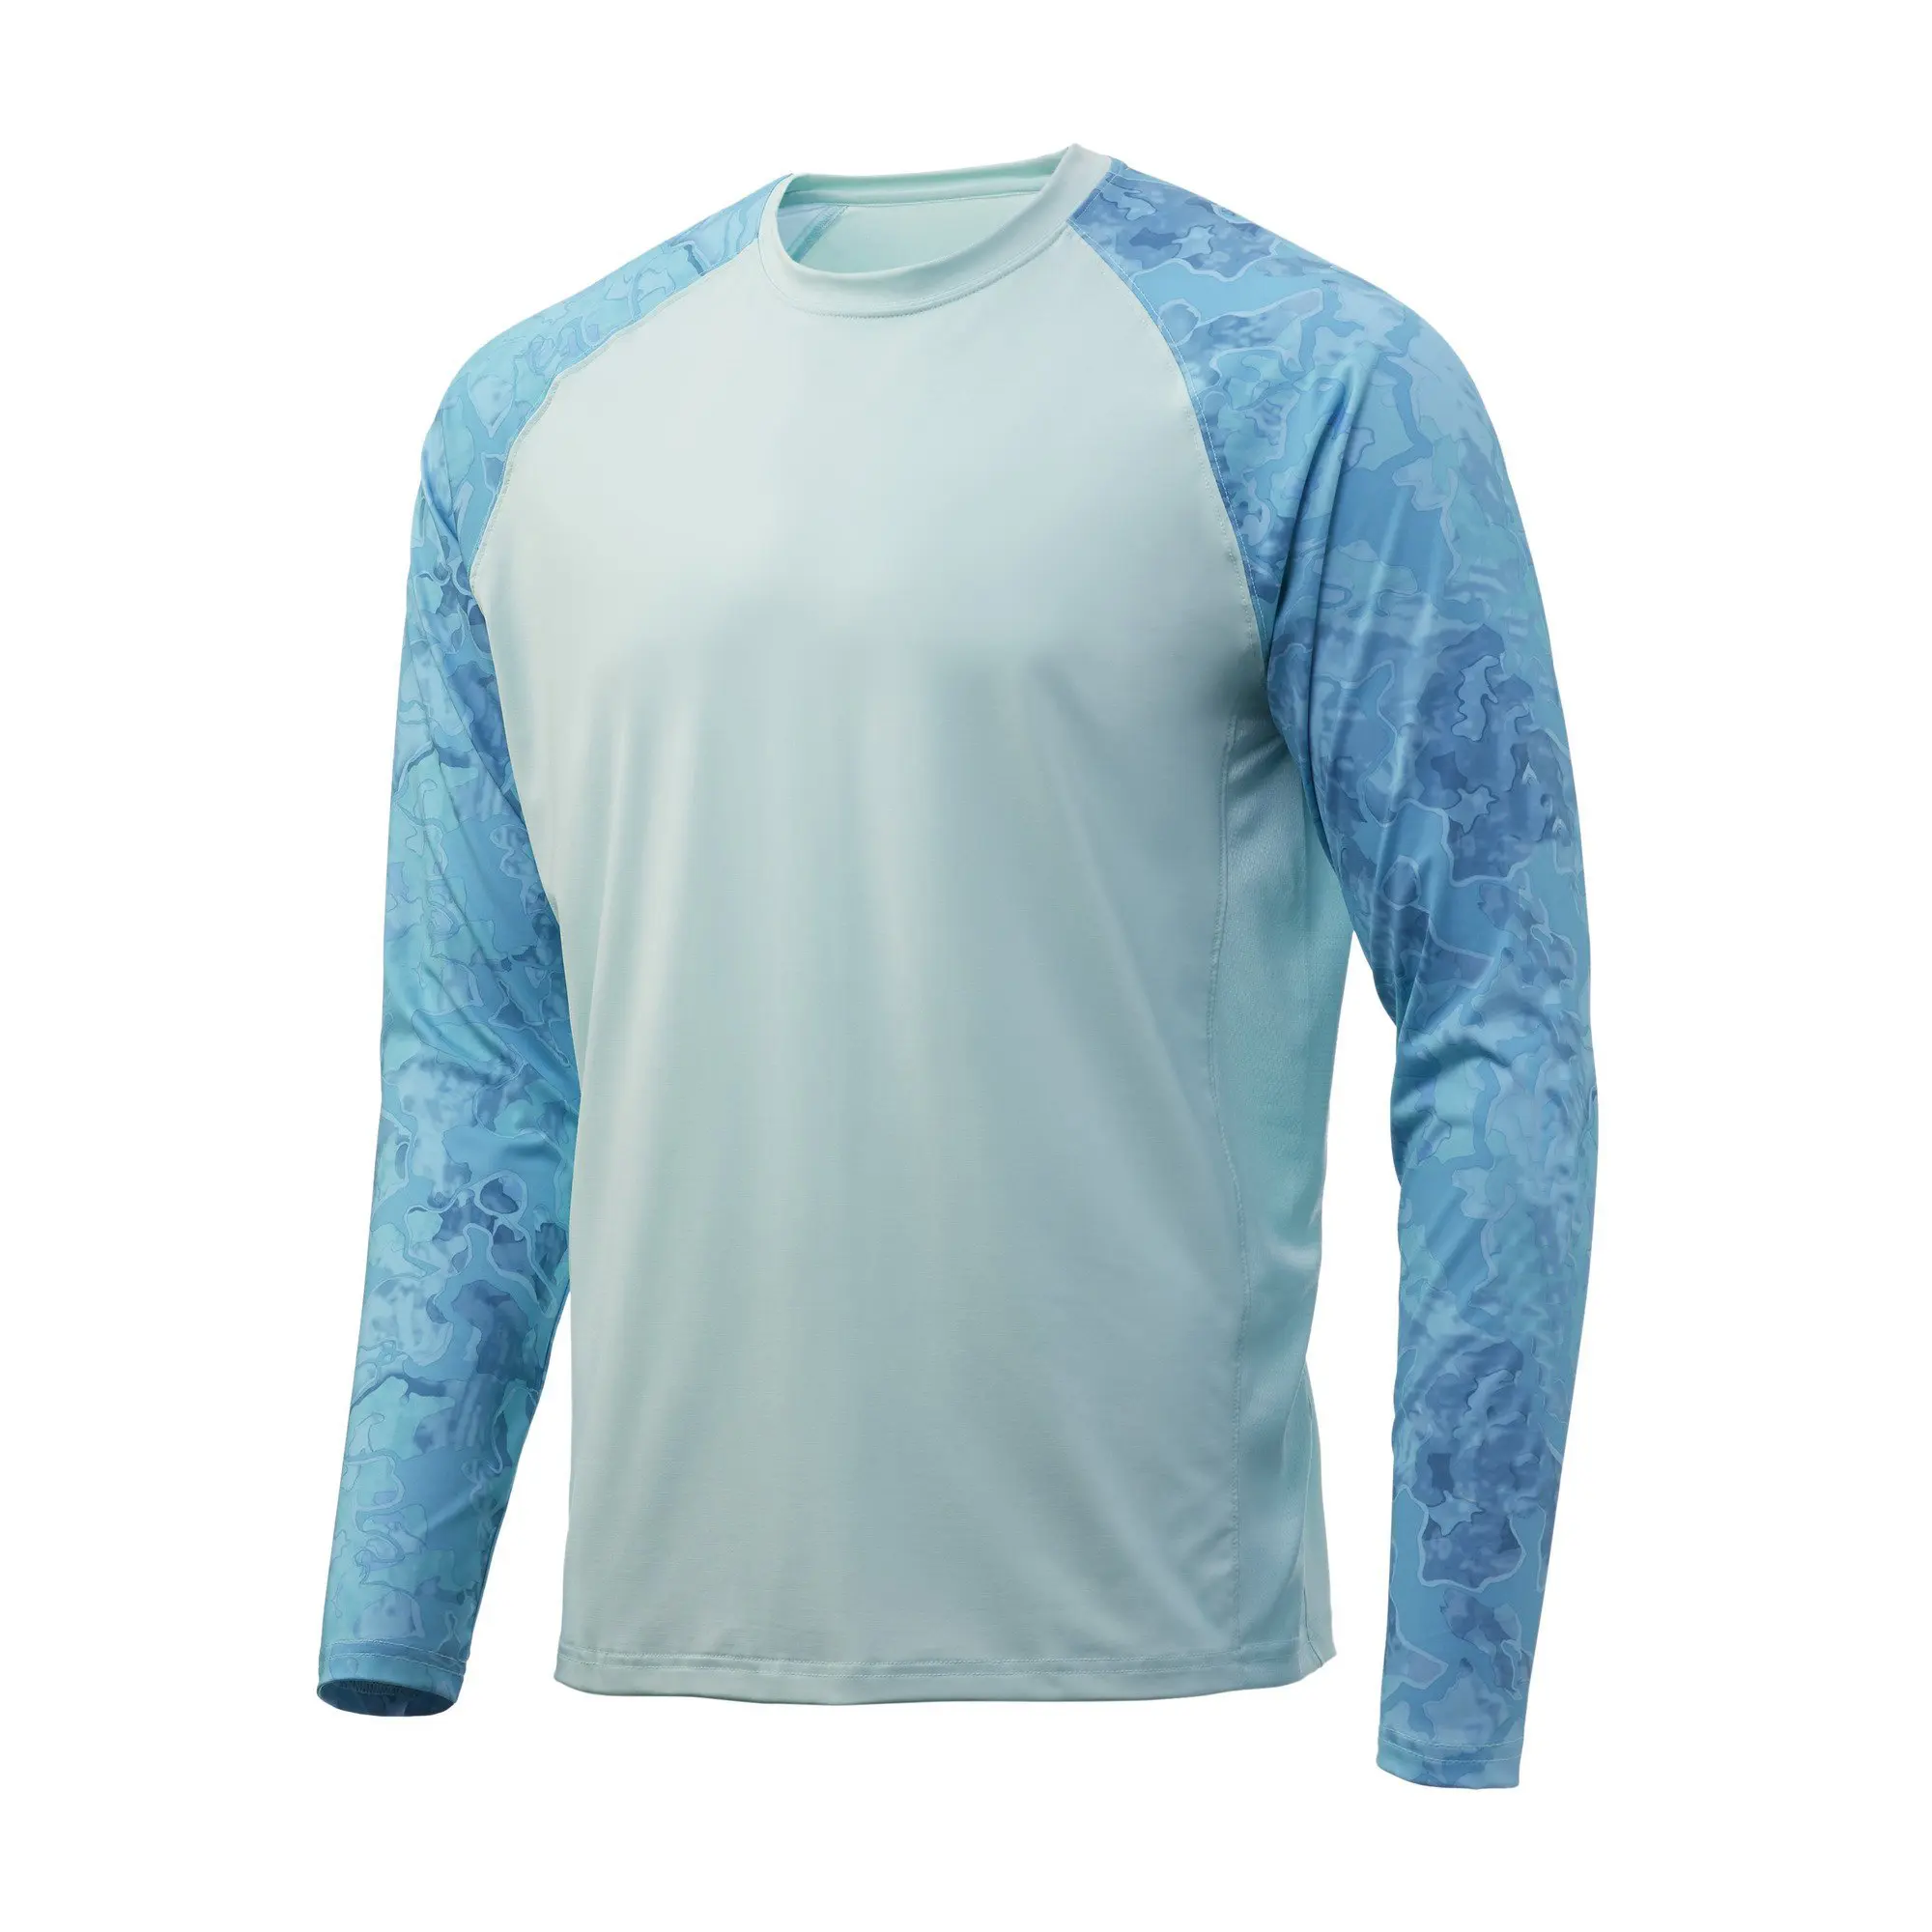 Roupas de pesca masculinas UPF 50 Stretch de poliéster com proteção UV Camisas de sol de mangas compridas Camisas de pesca leves e frescas